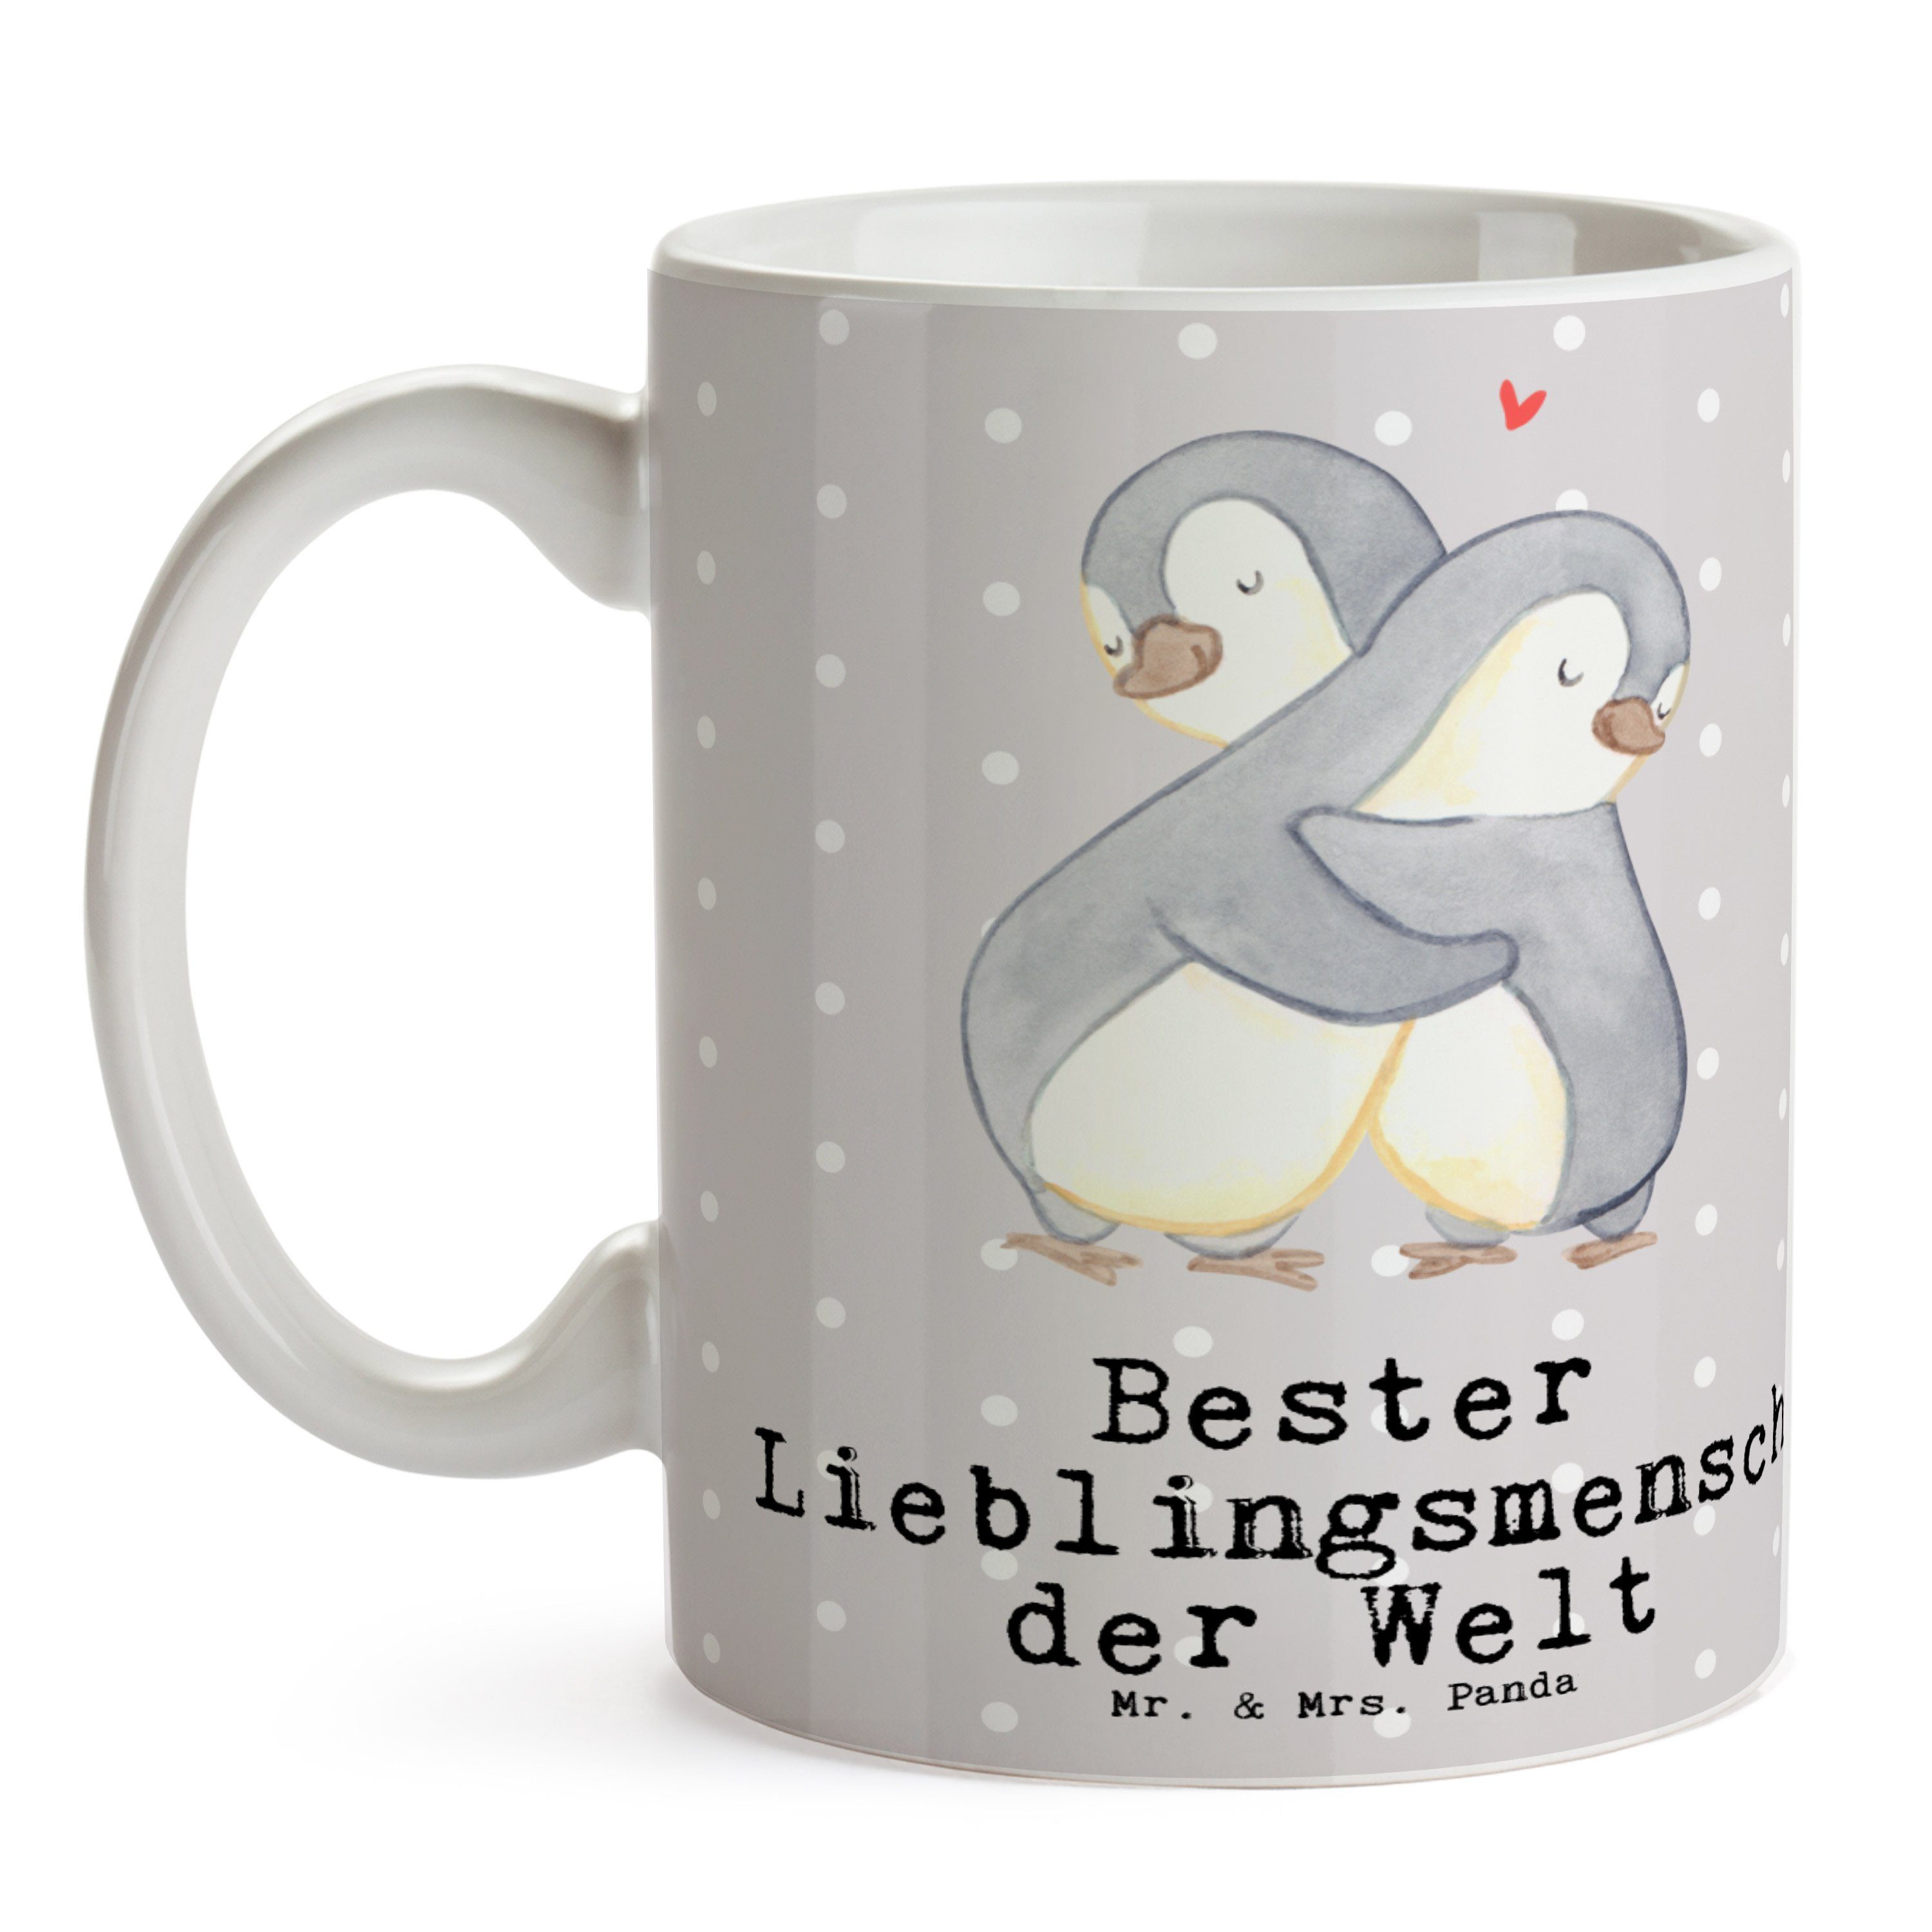 & Mrs. der Pastell Grau Mr. Bester - - Geschenk, Welt Pinguin Tasse Te, Panda Lieblingsmensch Keramik